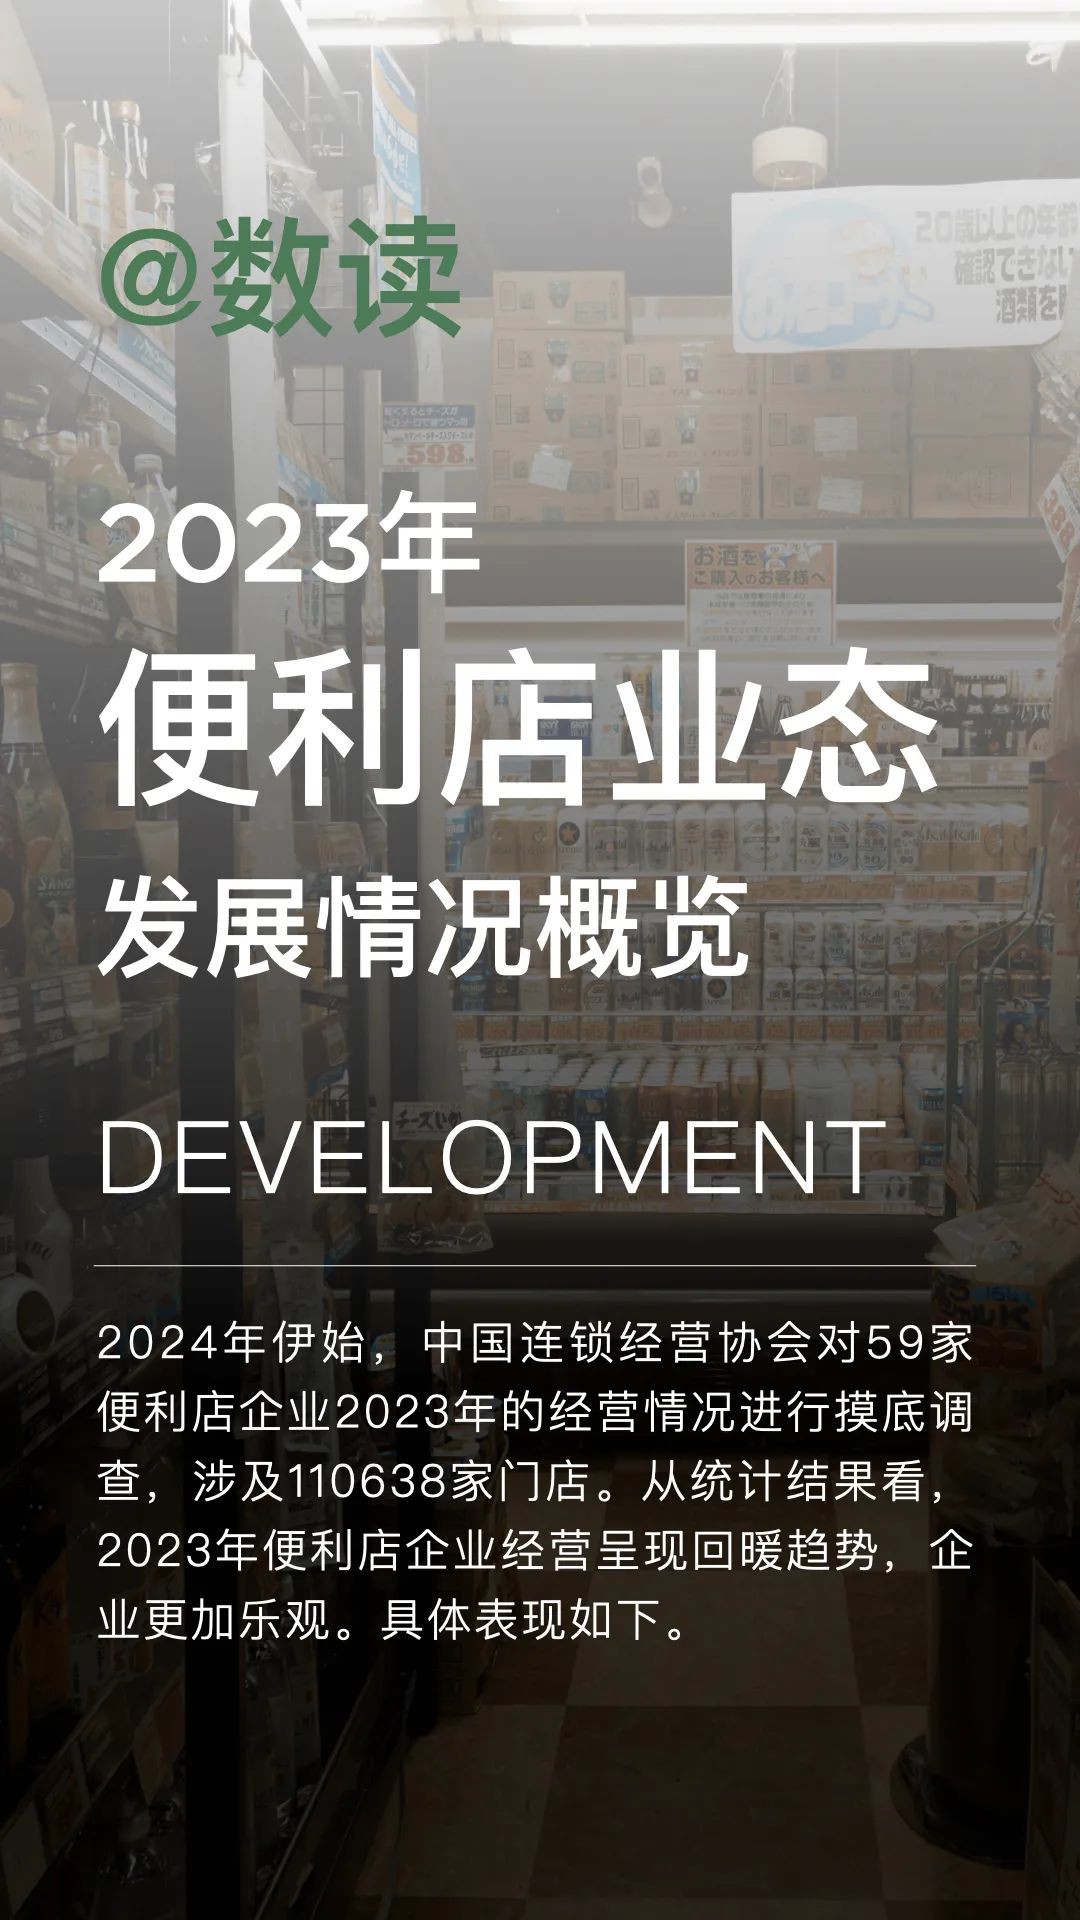 2023年便利店業態發展情況概覽，新開門店超1.3萬家